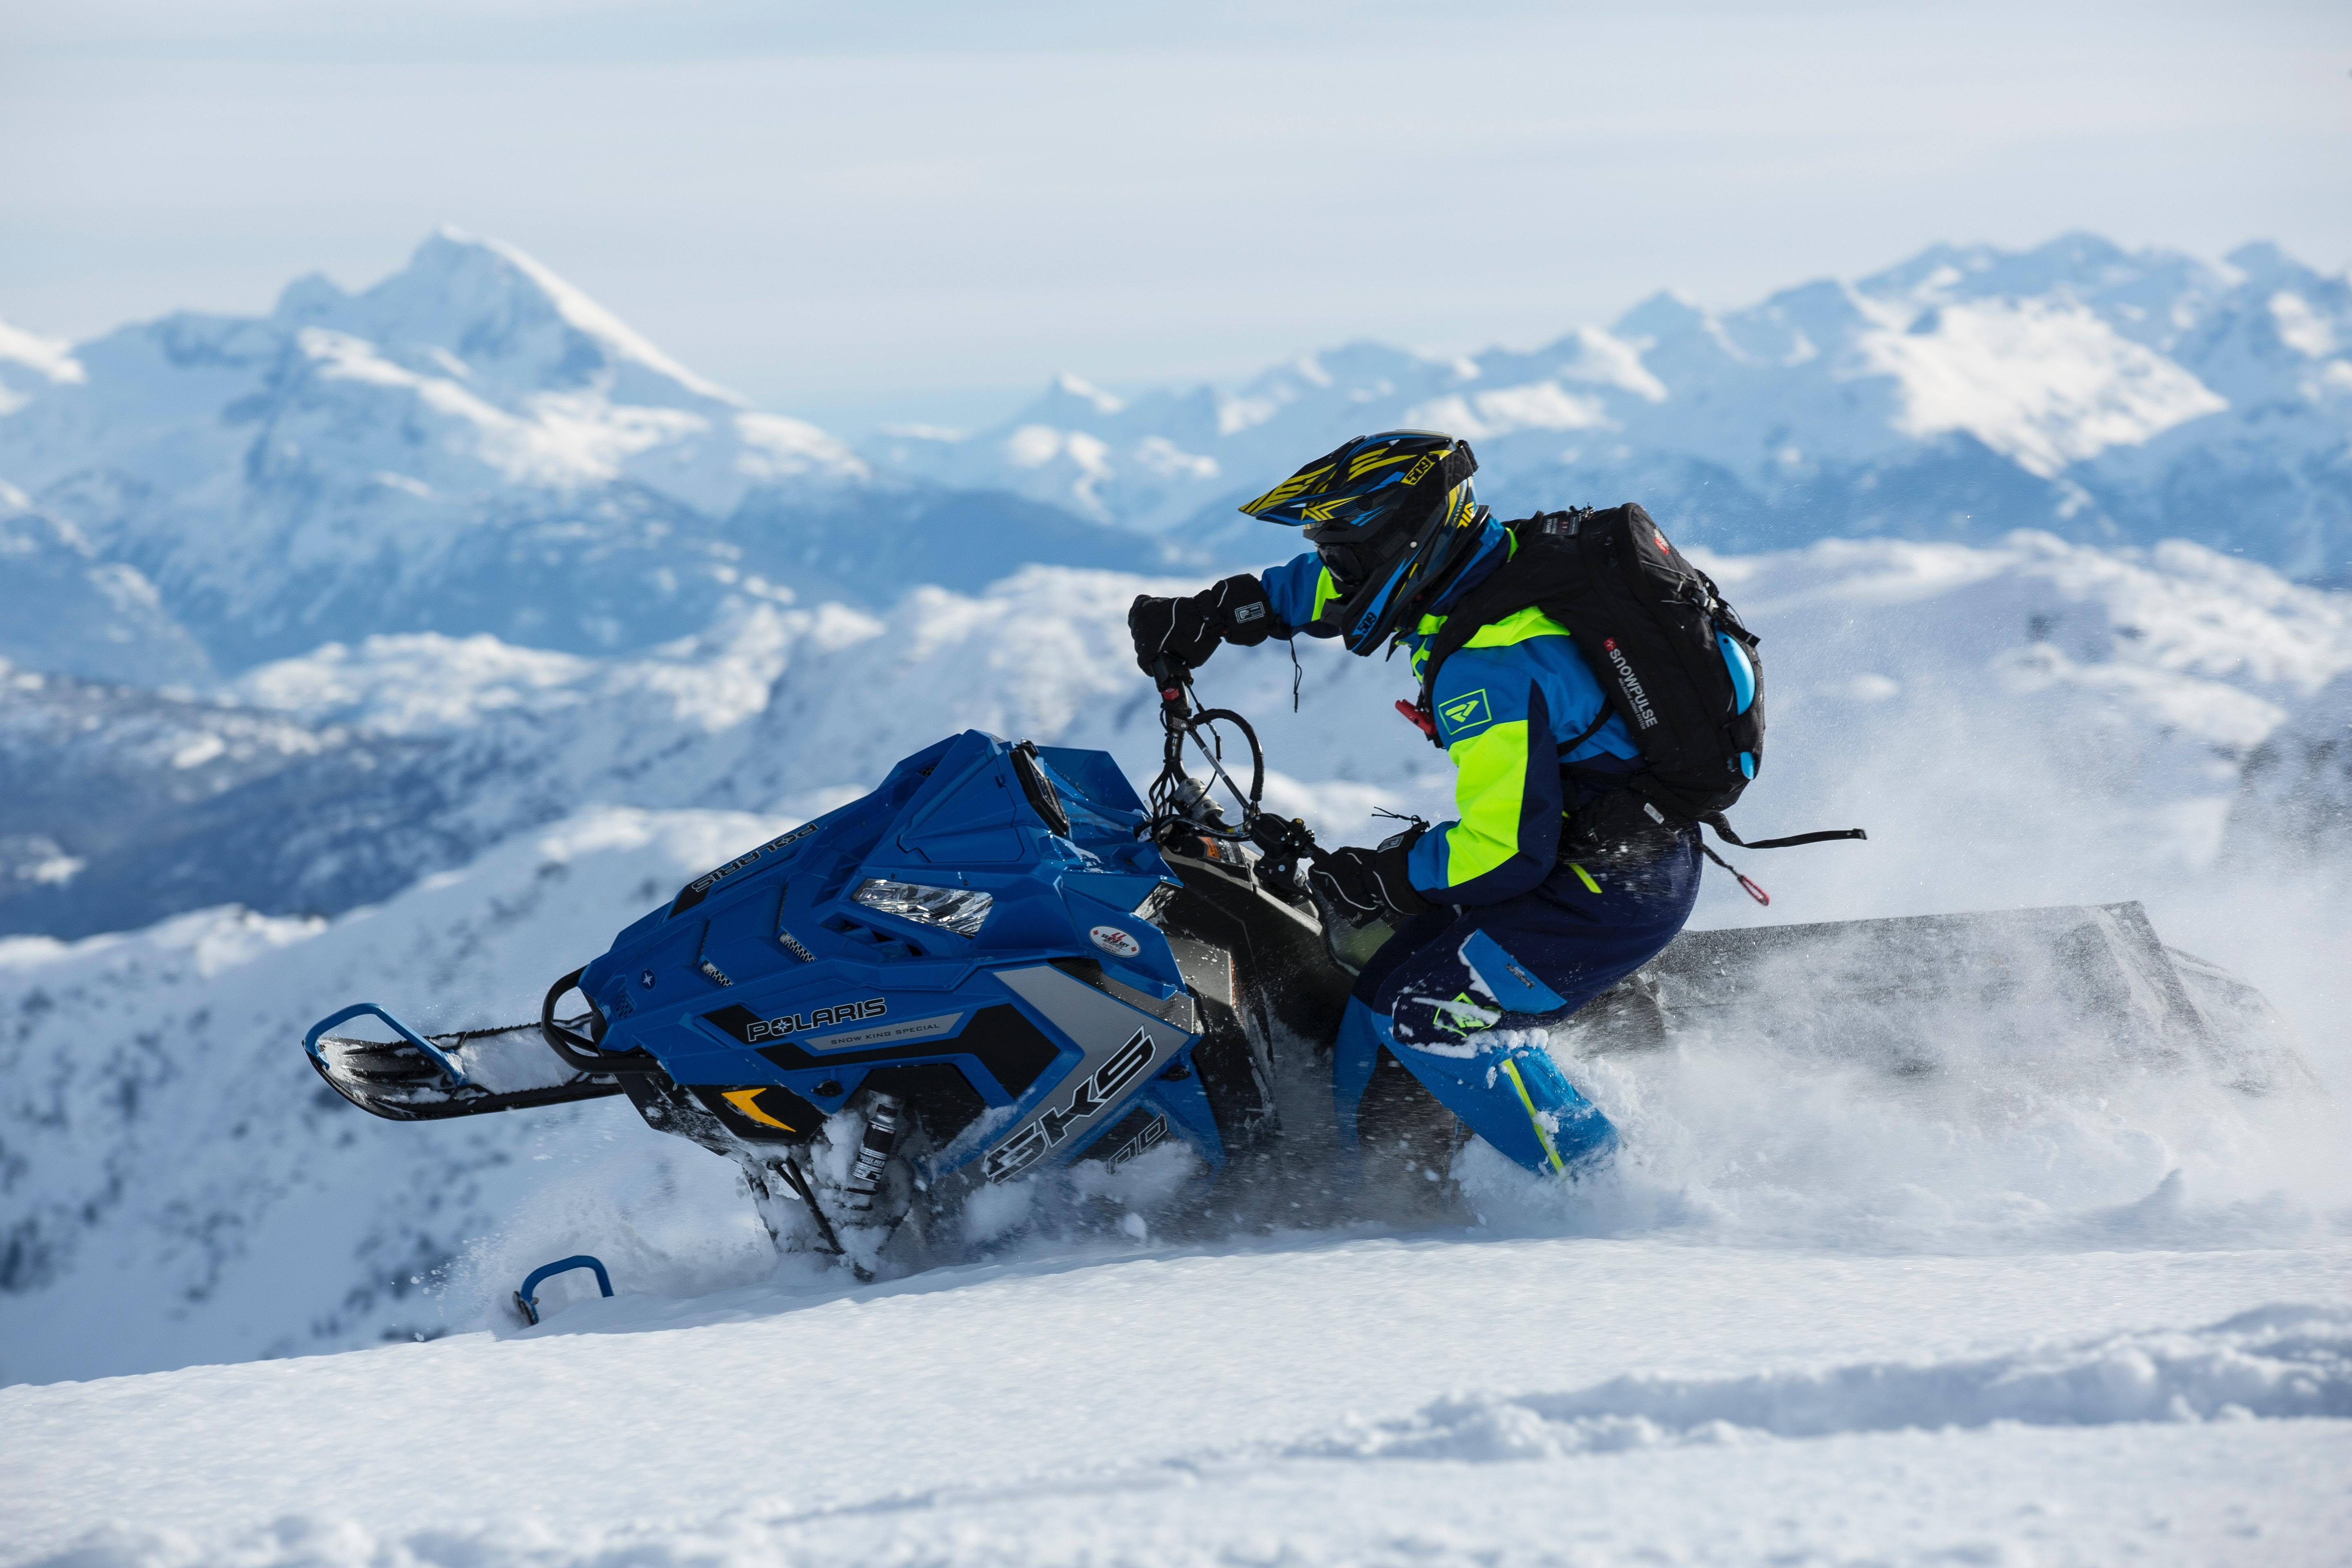 moto et neige, faut se préparer pour l'hiver prochain ! - partagemotopassion